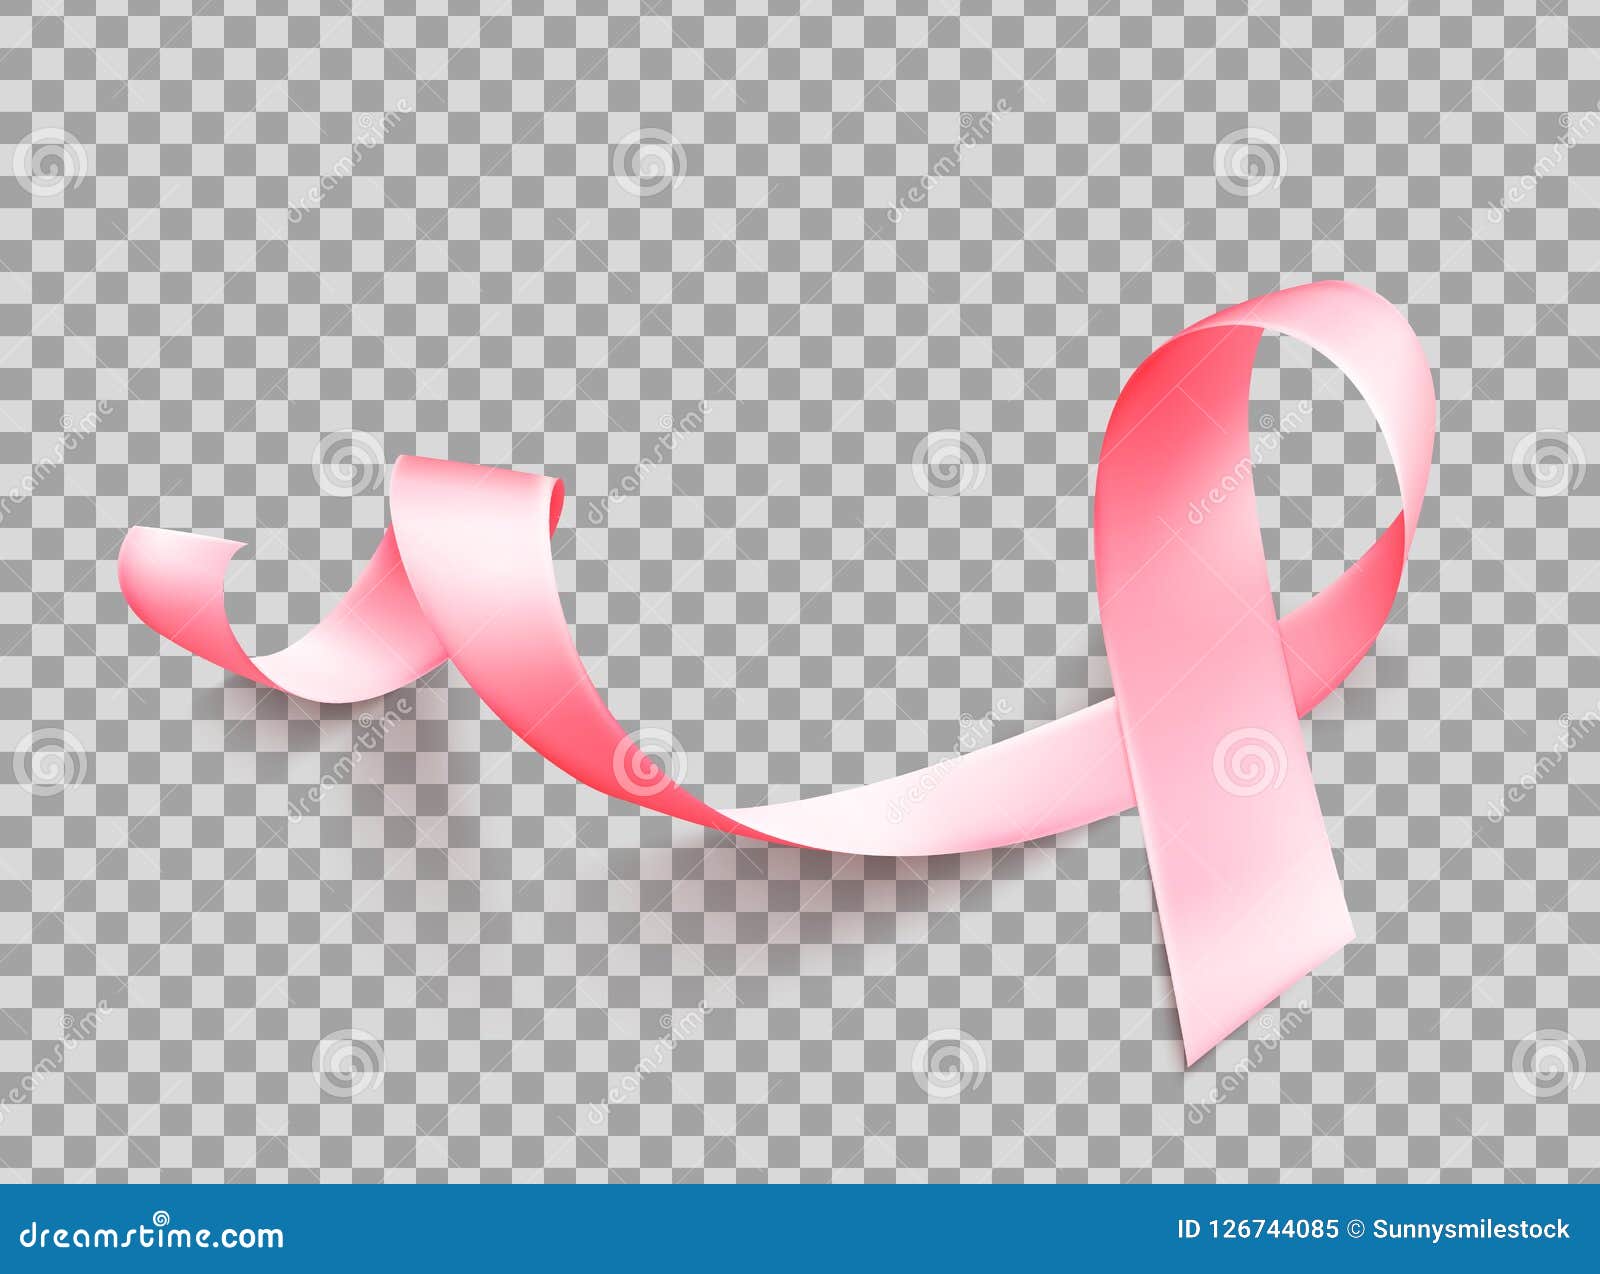 Pink Ribbon Outline Stock Illustrations – 5,819 Pink Ribbon Outline Stock  Illustrations, Vectors & Clipart - Dreamstime